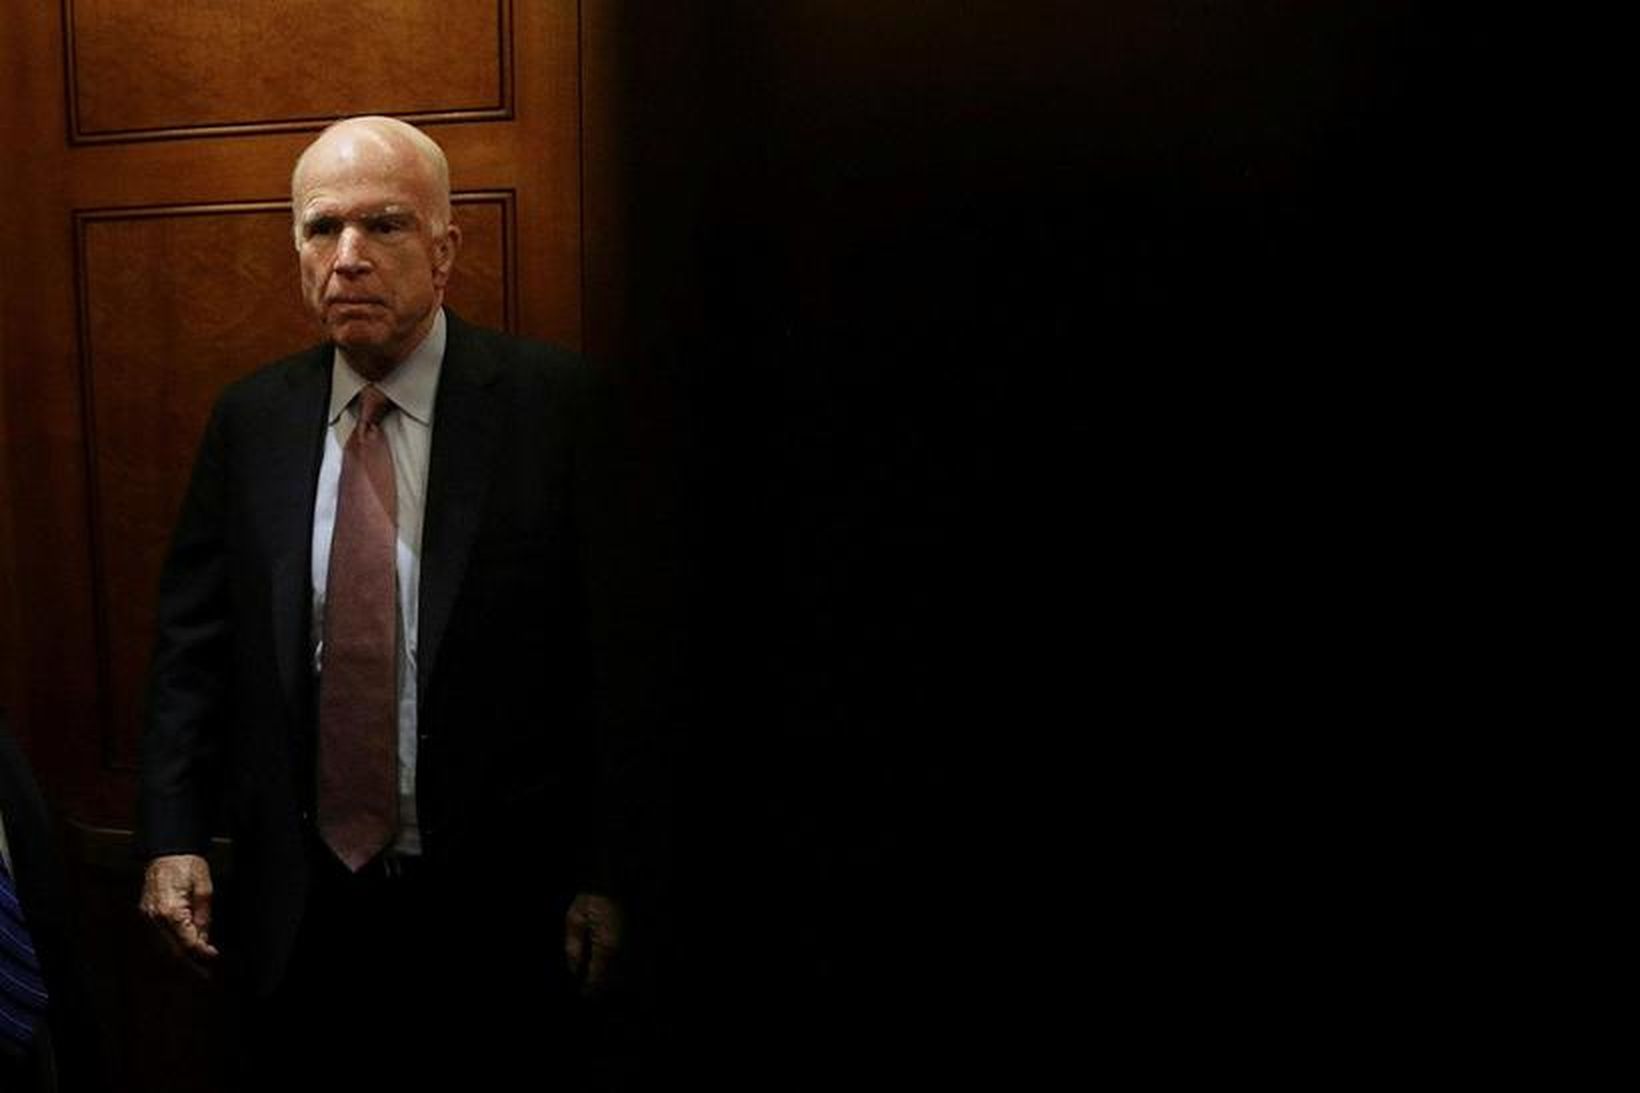 John McCain, öldungadeildarþingmaður repúblikana, glímir við krabbamein í heila.